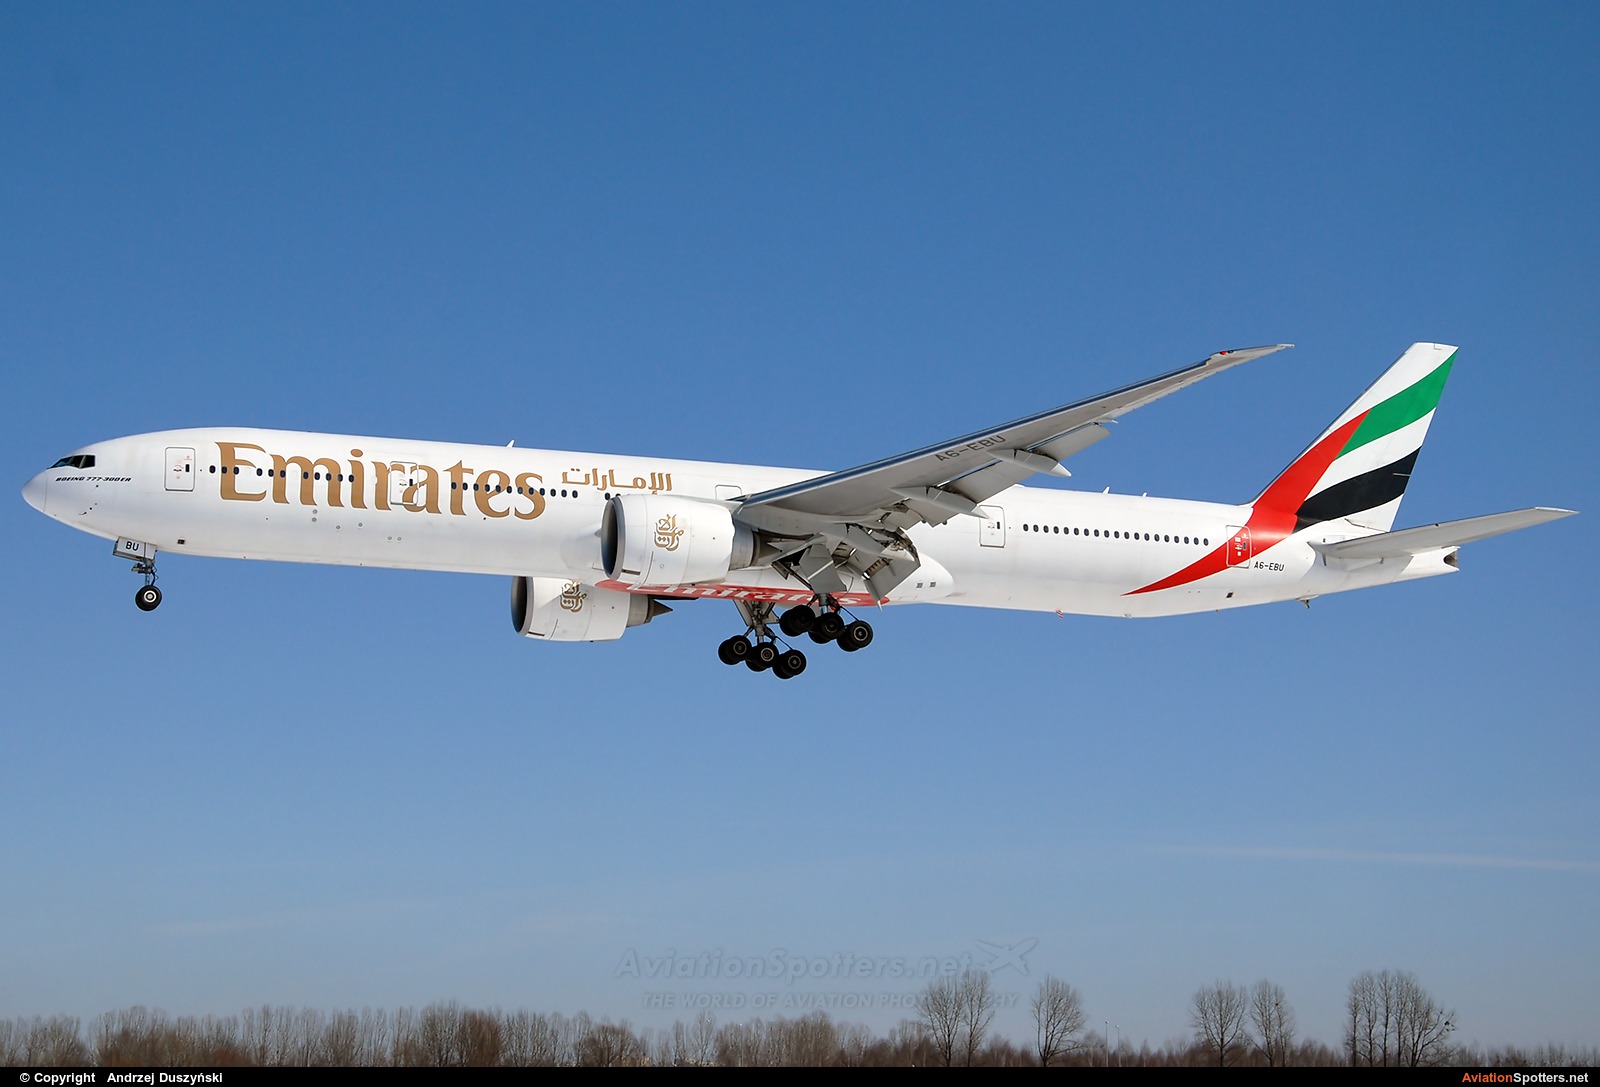 Emirates Airlines  -  777-300  (A6-EBU) By Andrzej Duszyński (duszy)